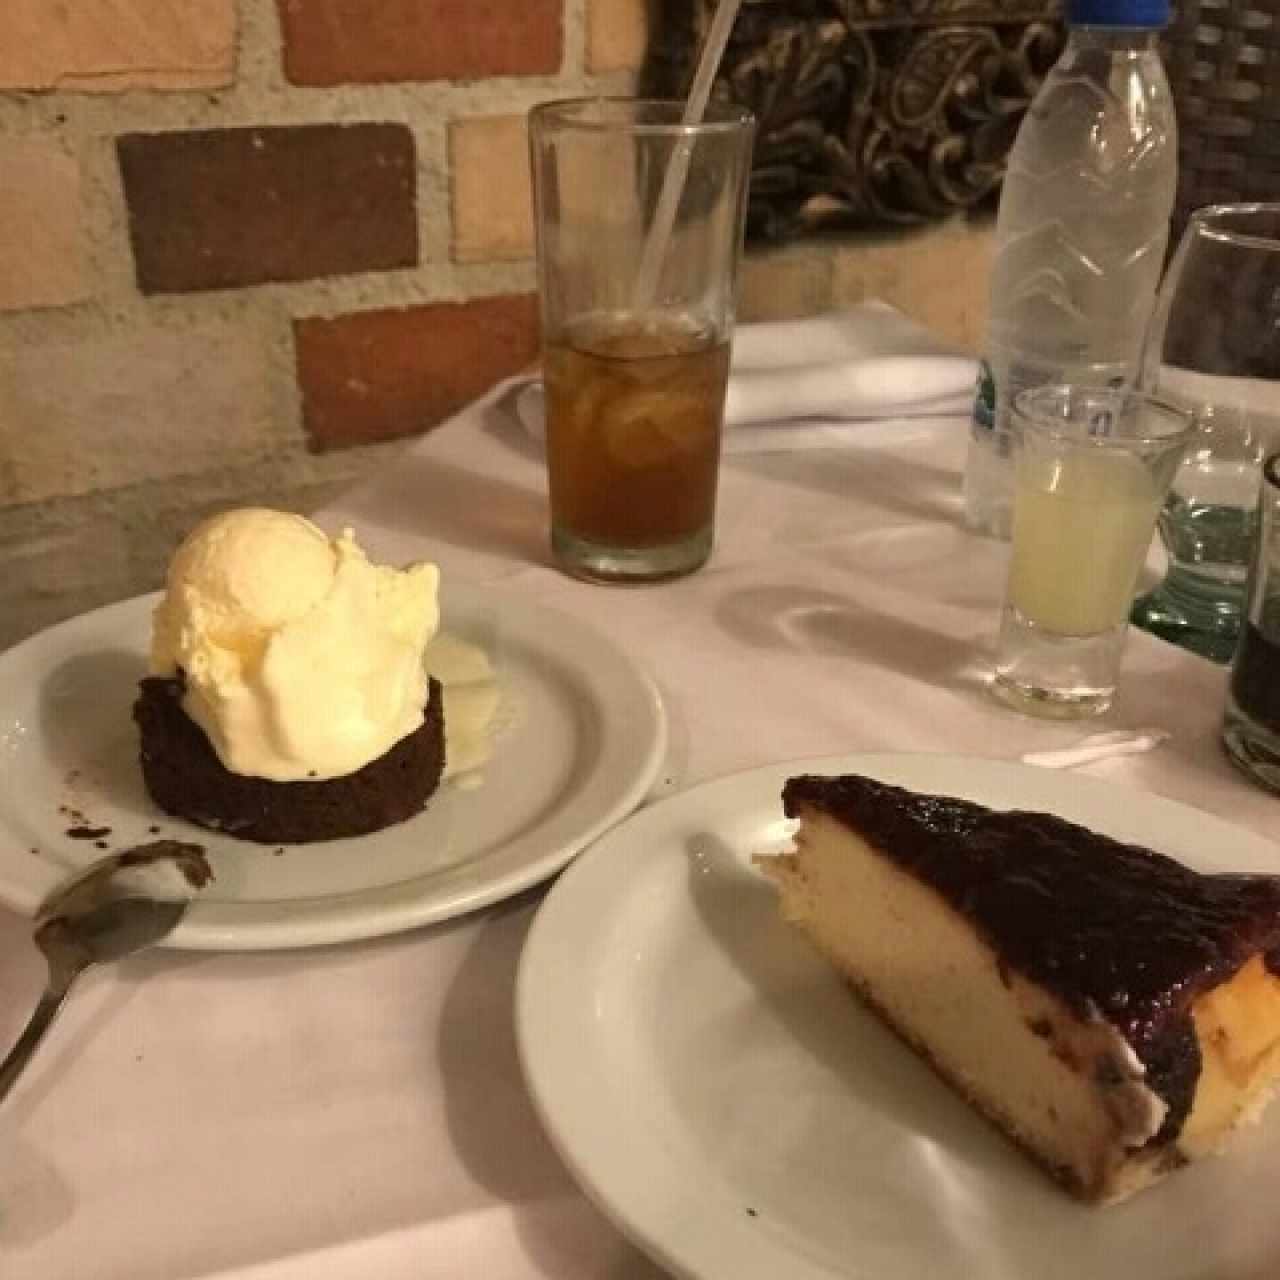 Brownie con helado y Cheese cake 